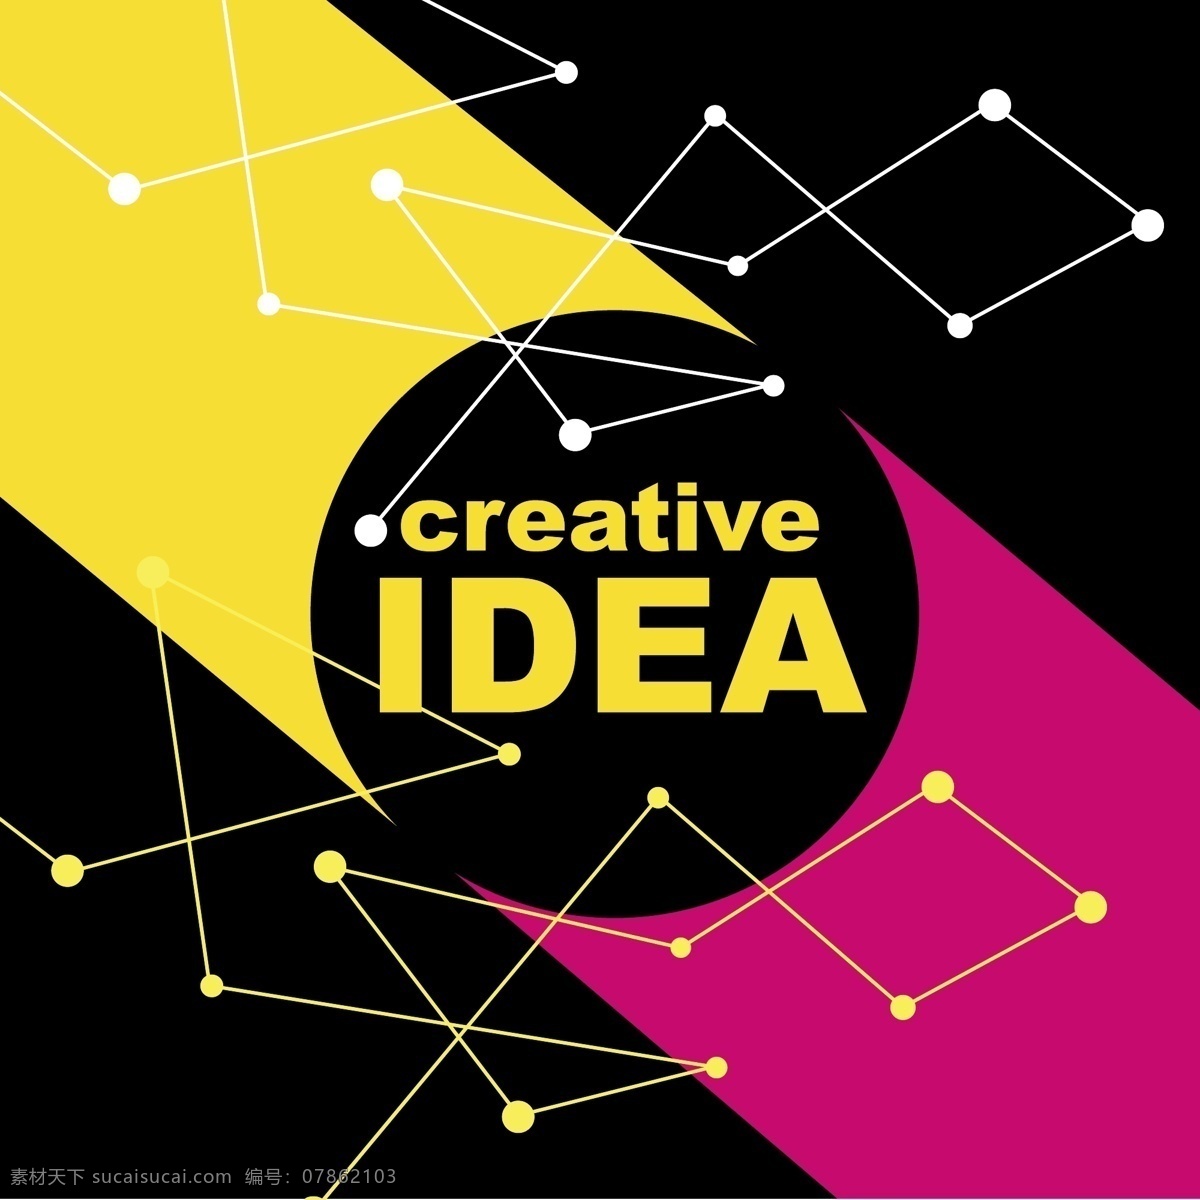 创意思路背景 创意思路 想法 创意新思维 头脑风暴 创意图标 创意图片 商务创意 生活百科 矢量素材 黑色